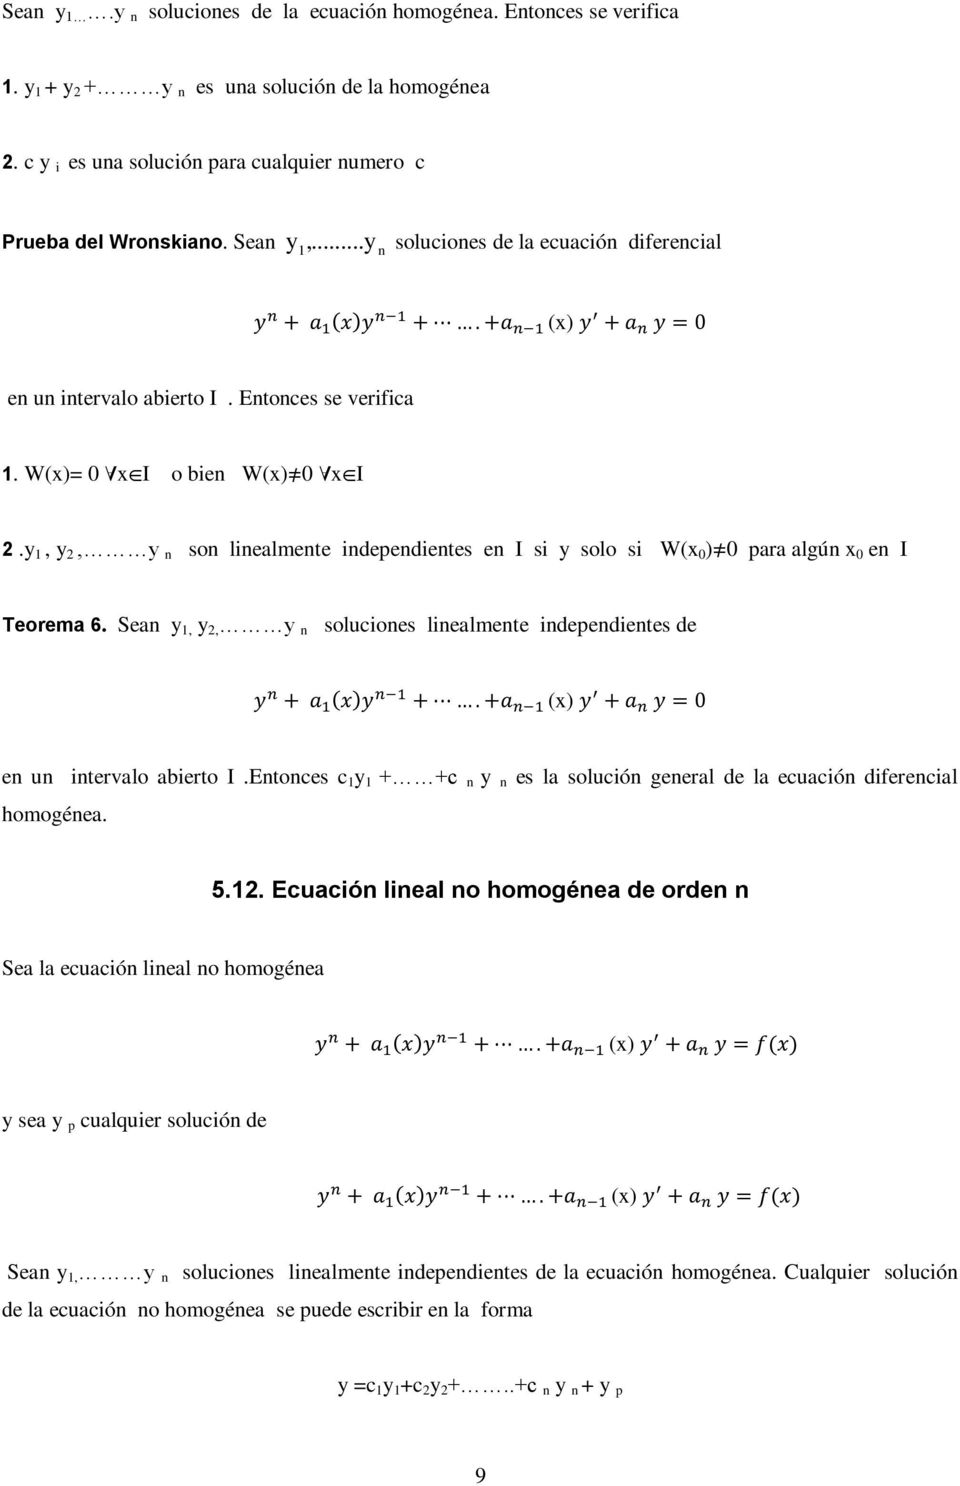 San,, n solucions linalmnt indpndints d ( ) () n un intrvalo abirto I.Entoncs c + +c n n s la solución gnral d la cuación difrncial homogéna. 5.